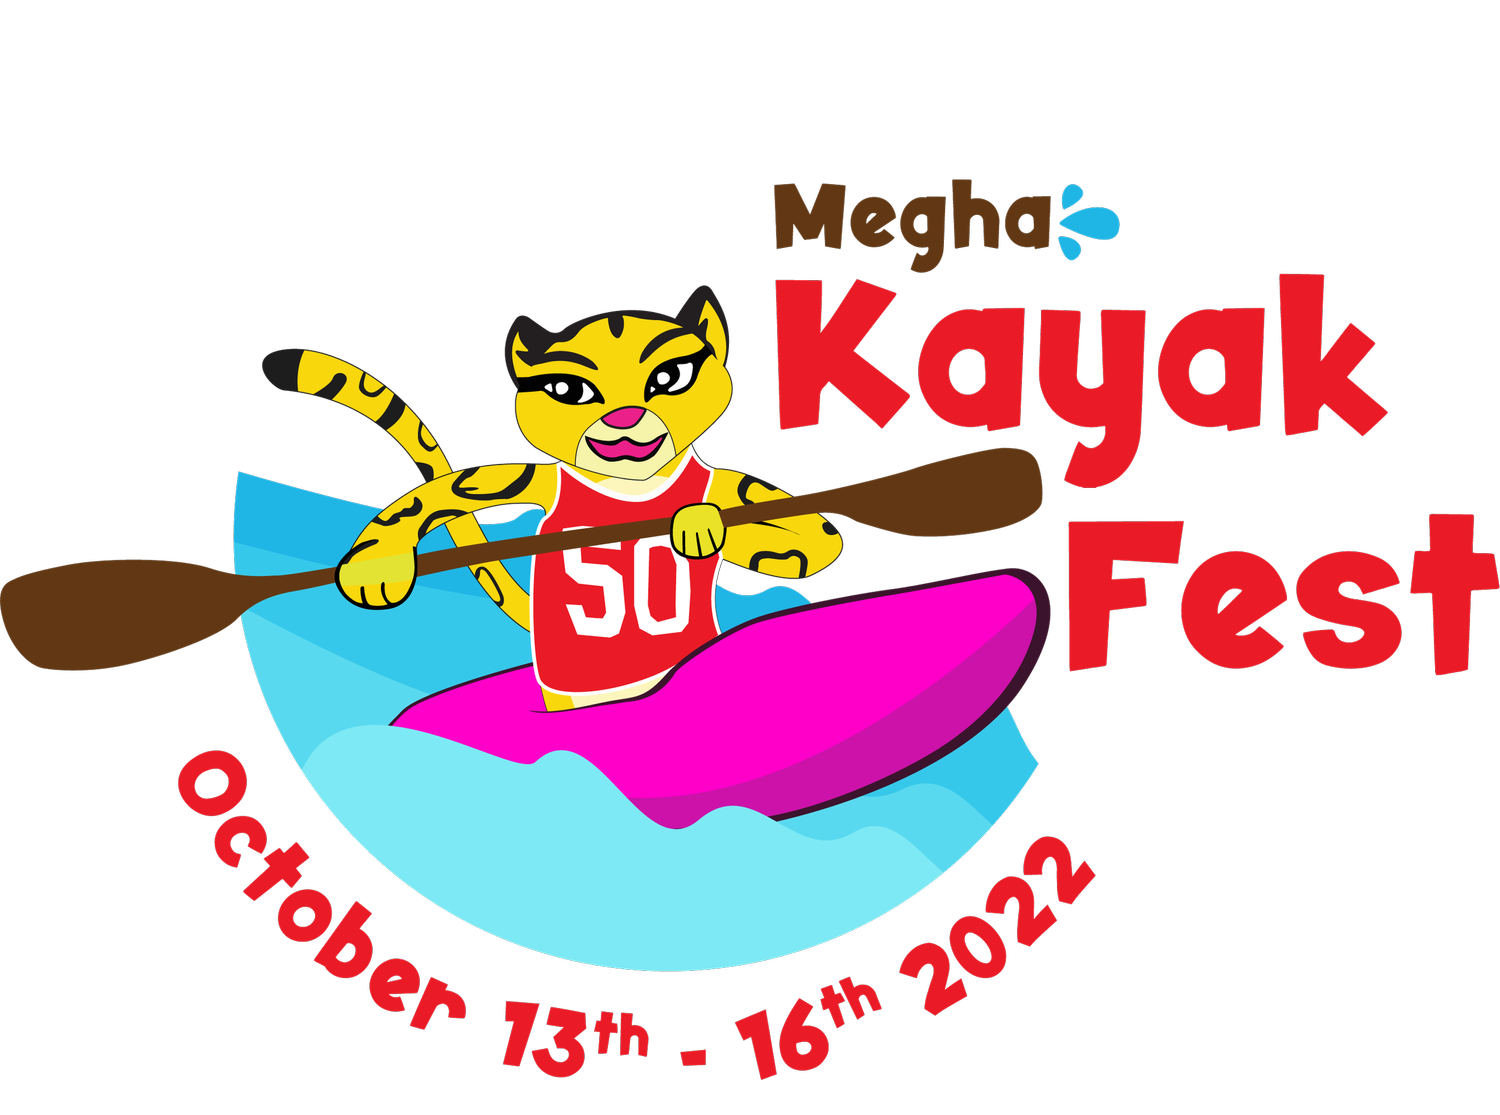 Megha Kayak Festival